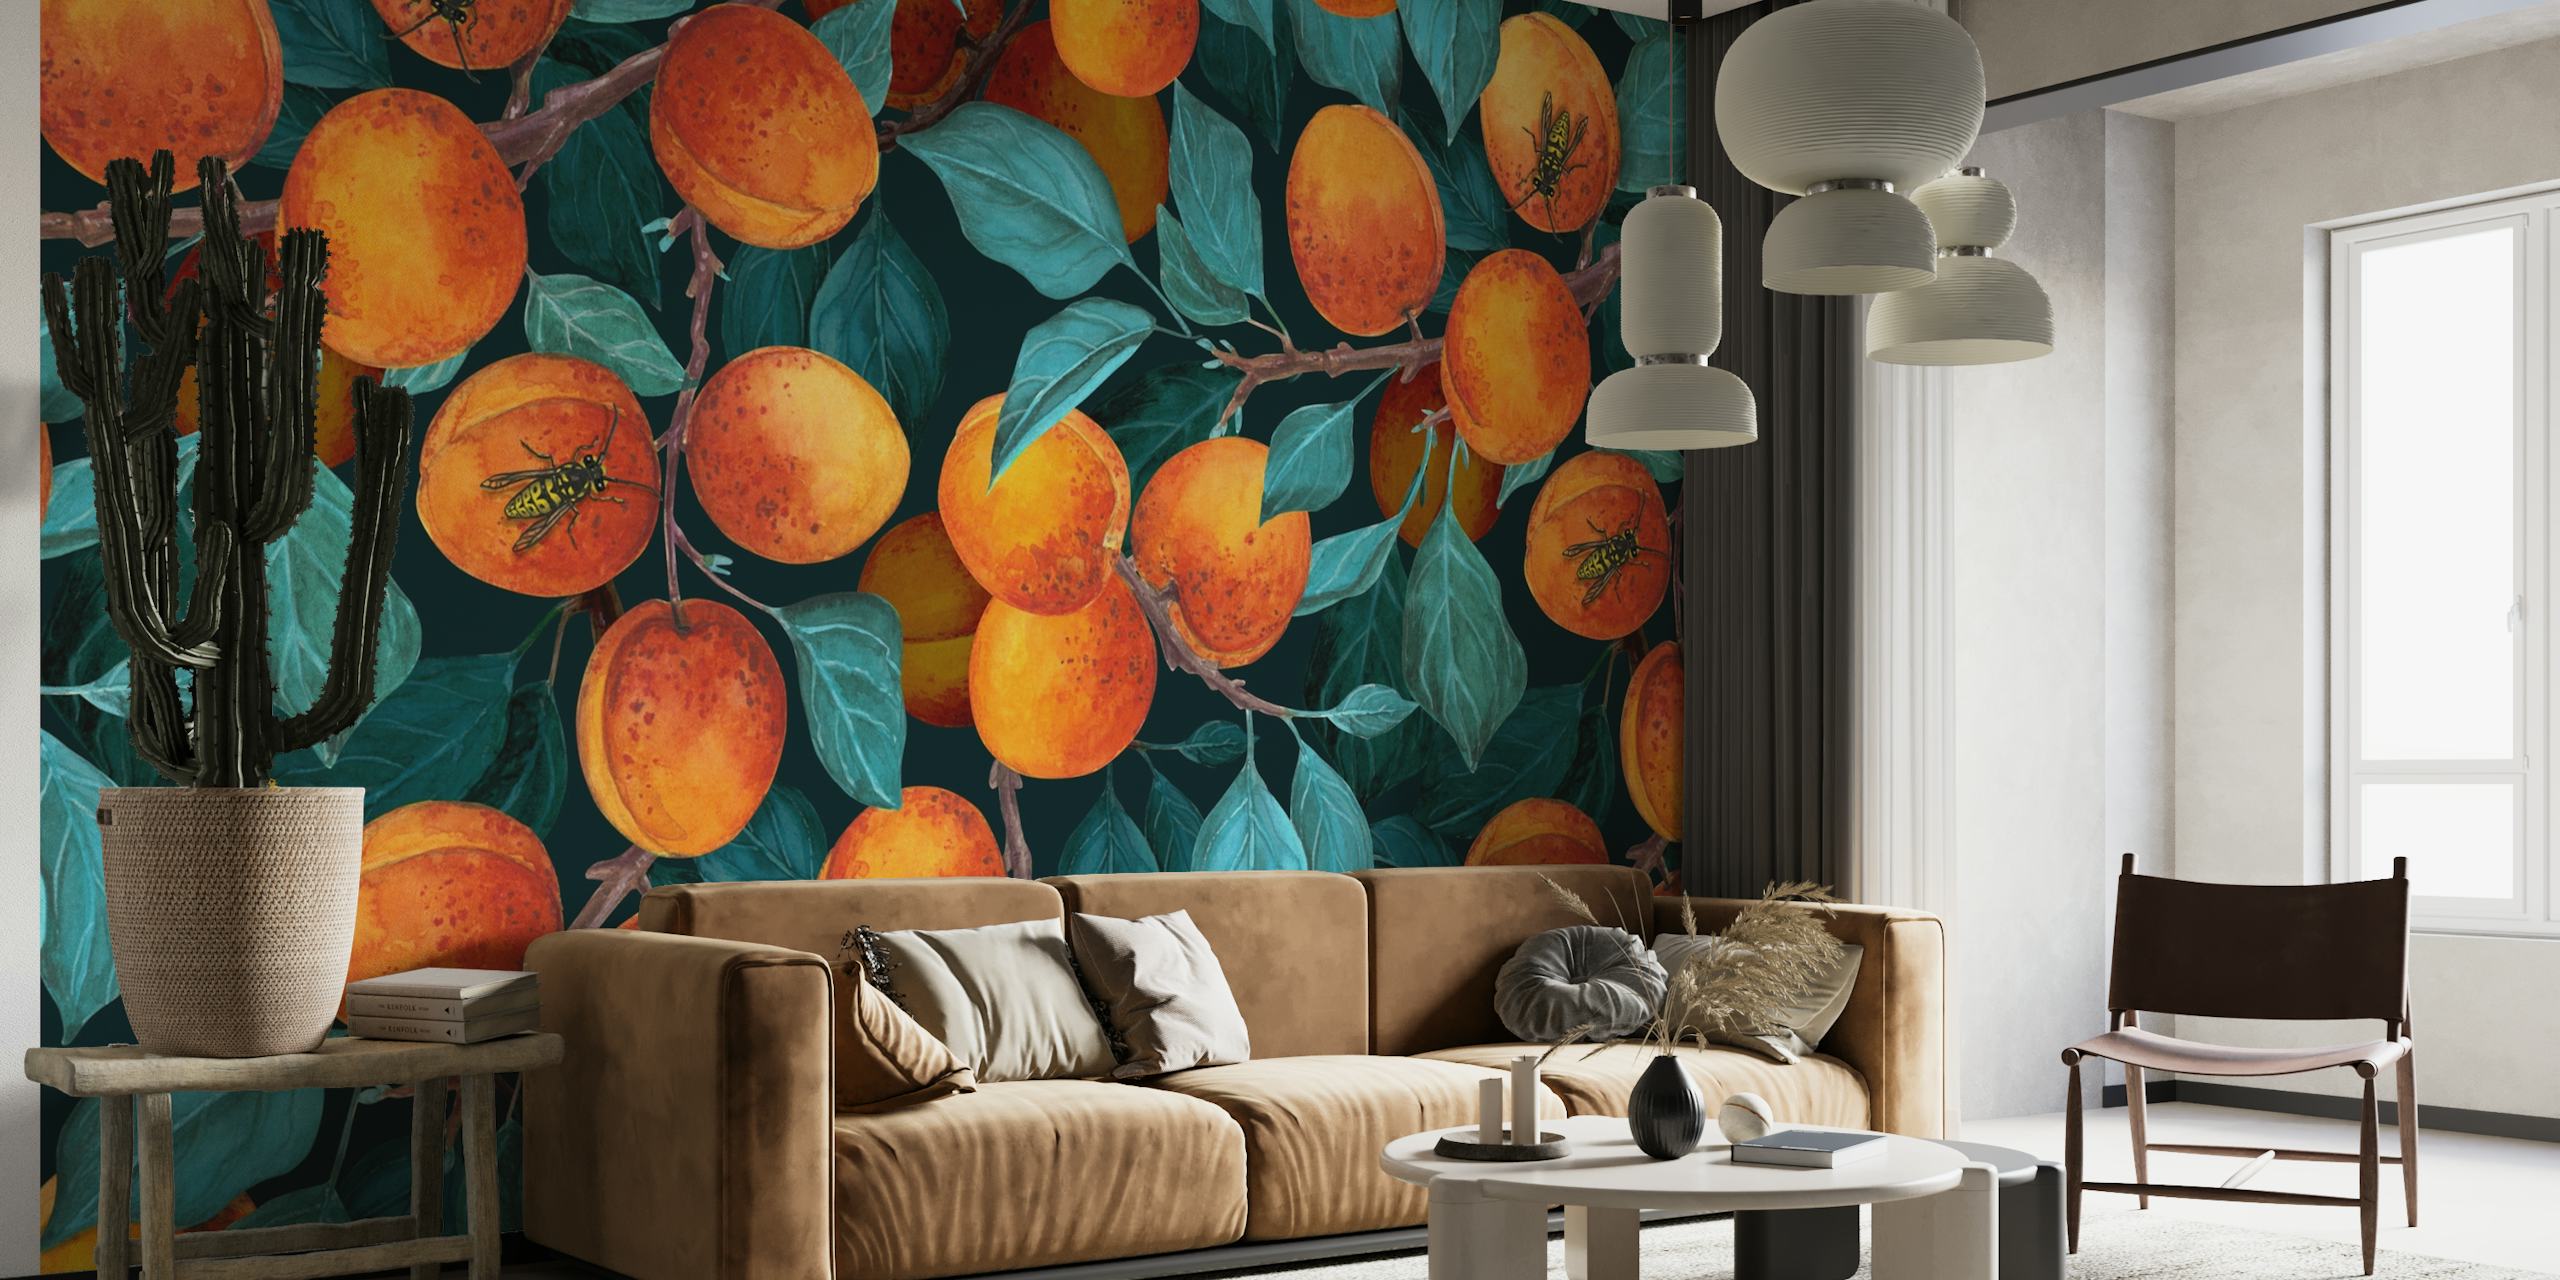 Apricot garden wallpaper